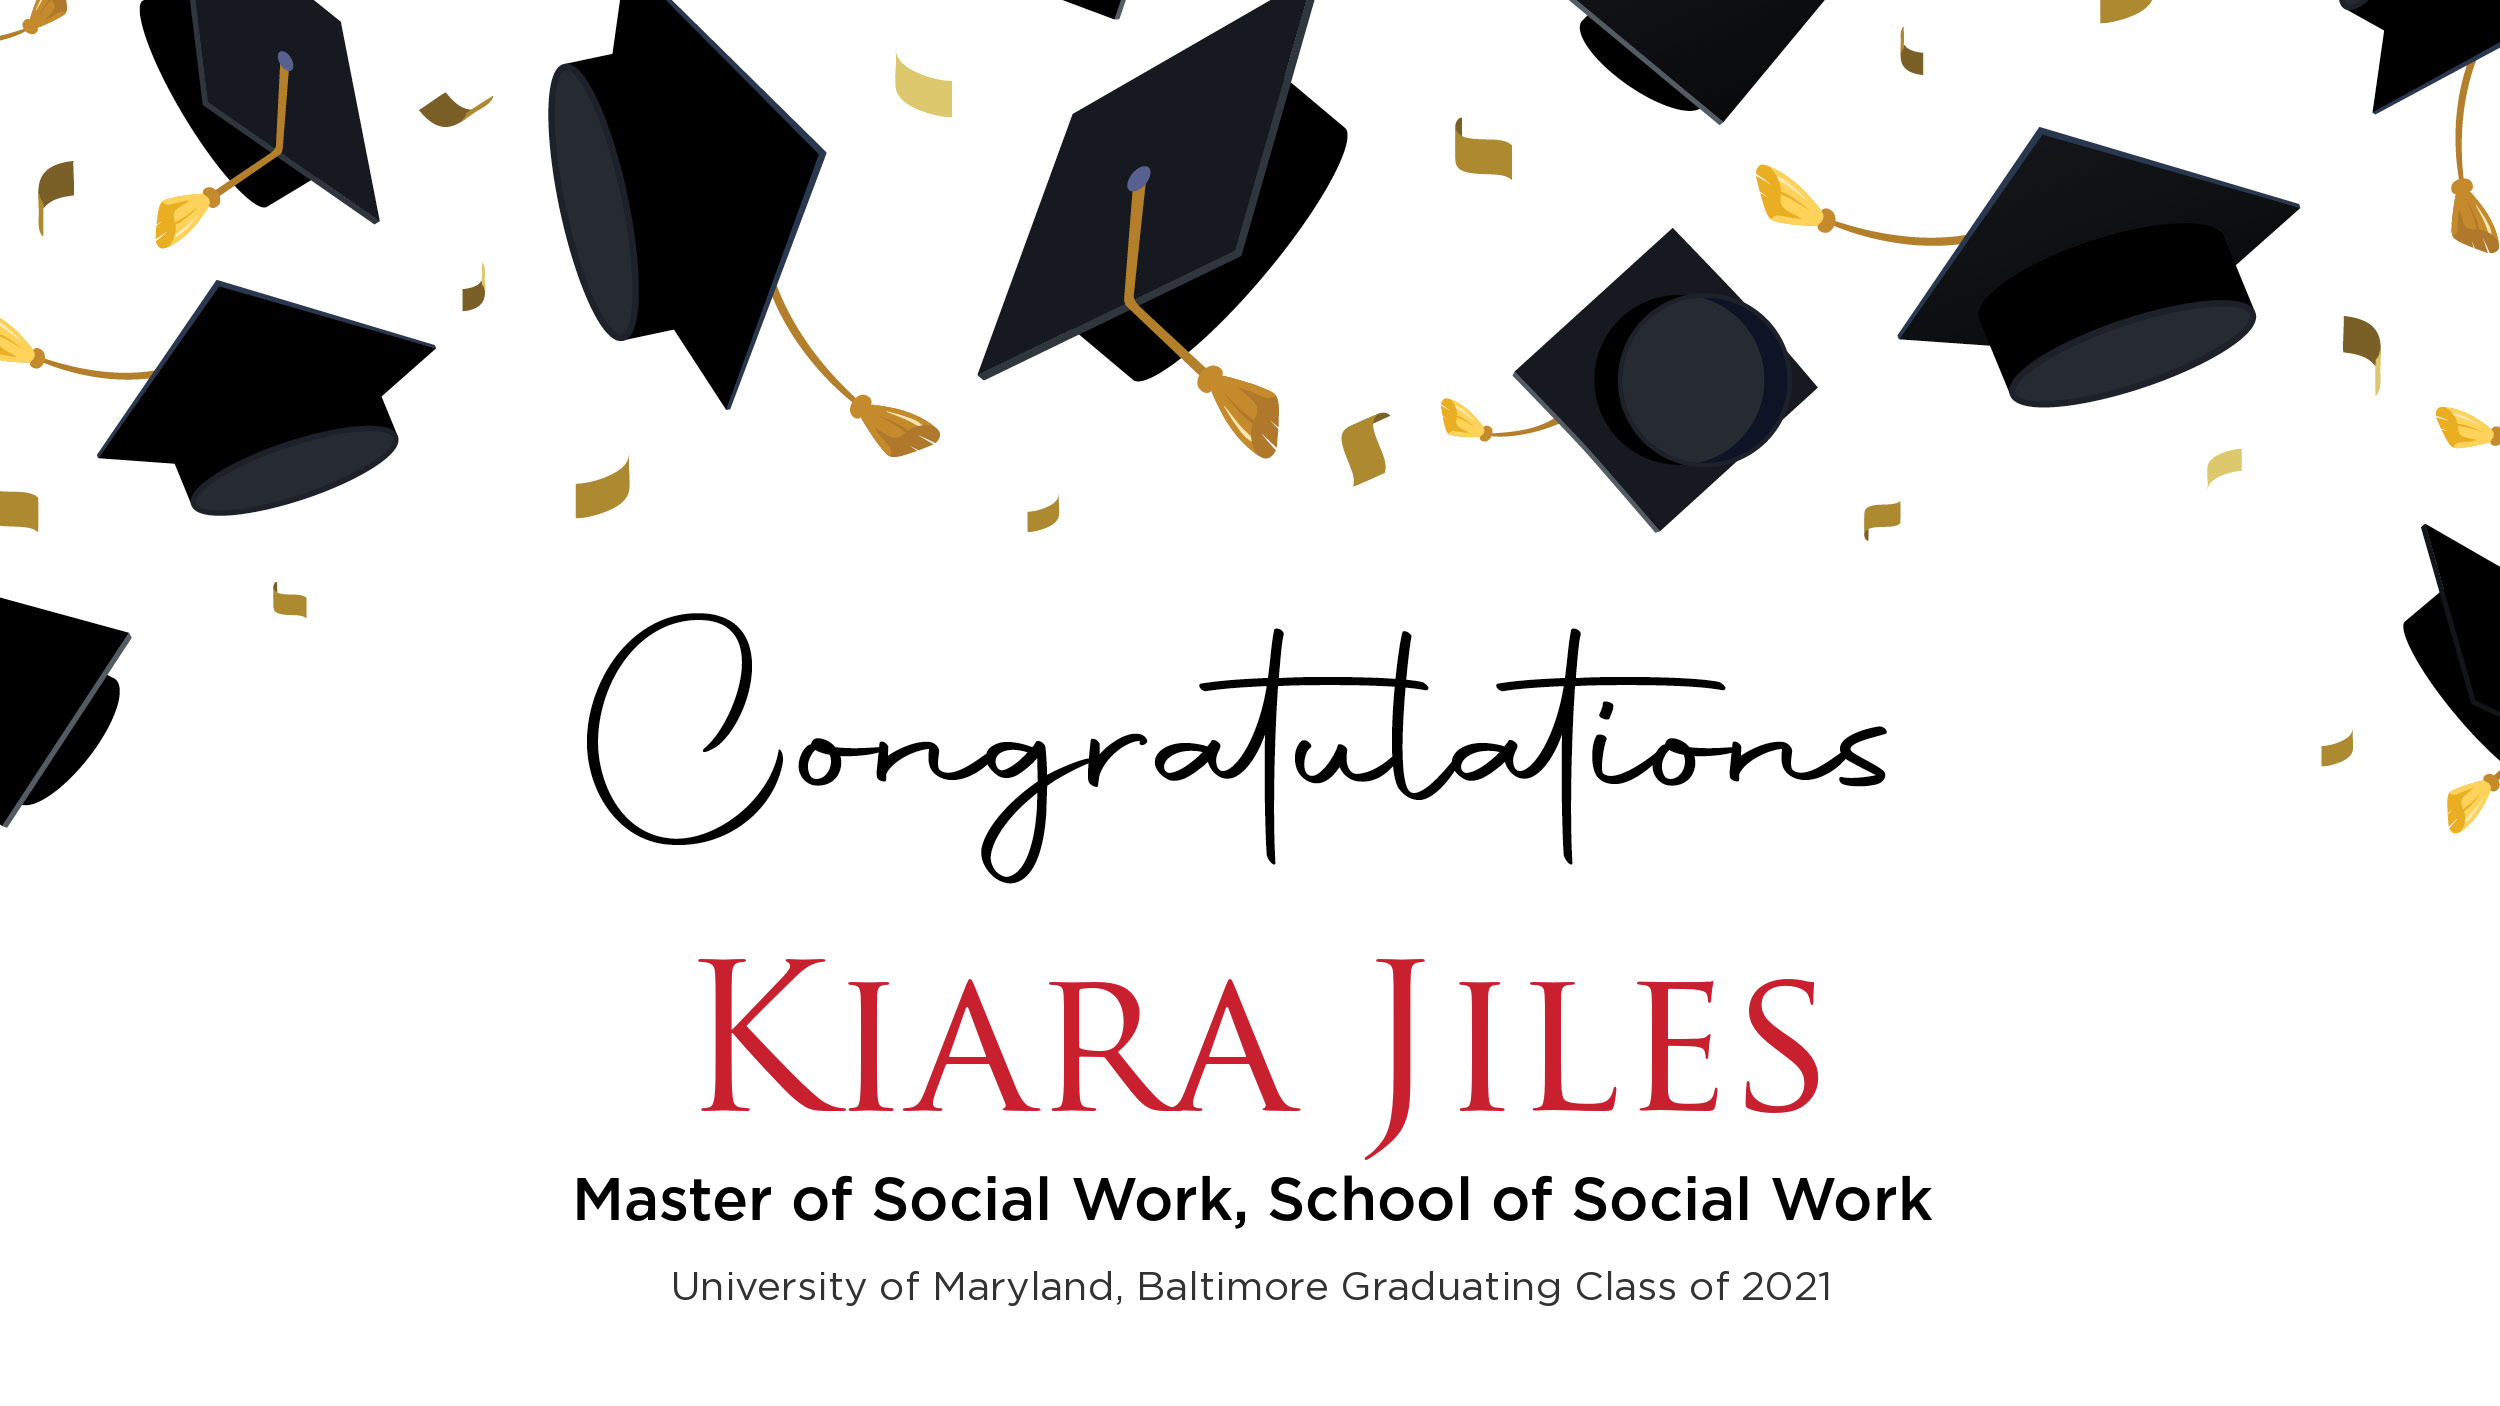 Congratulations Kiara Jiles, Master of Social Work